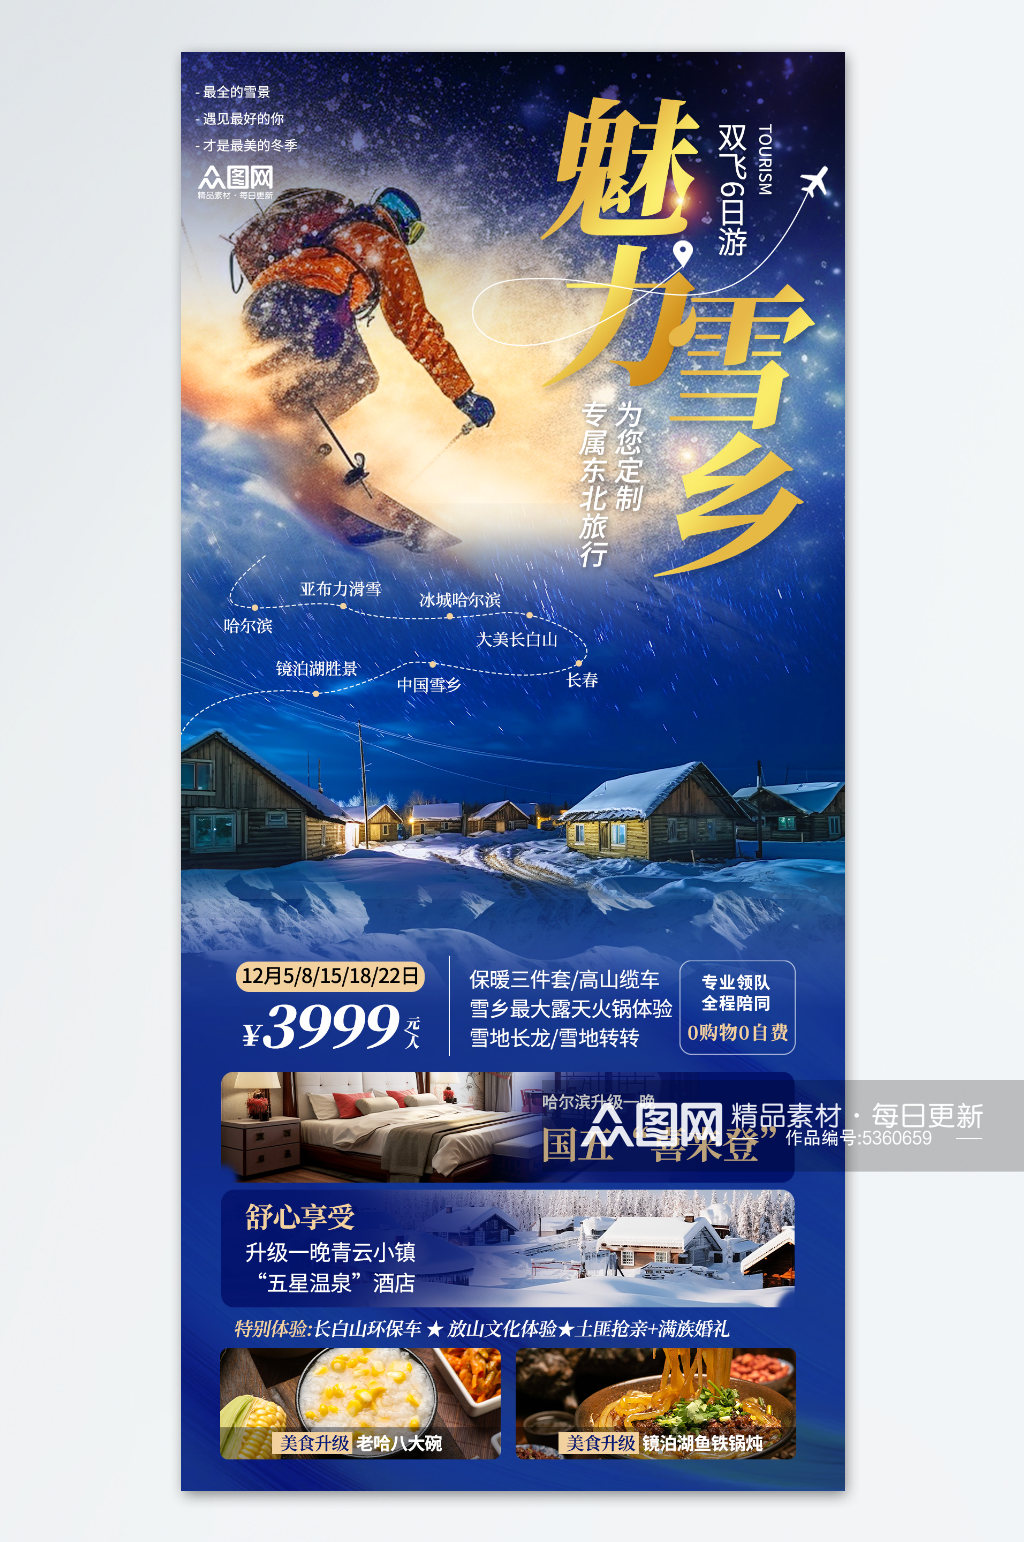 简约创意冬季东北雪乡旅游旅行社海报素材